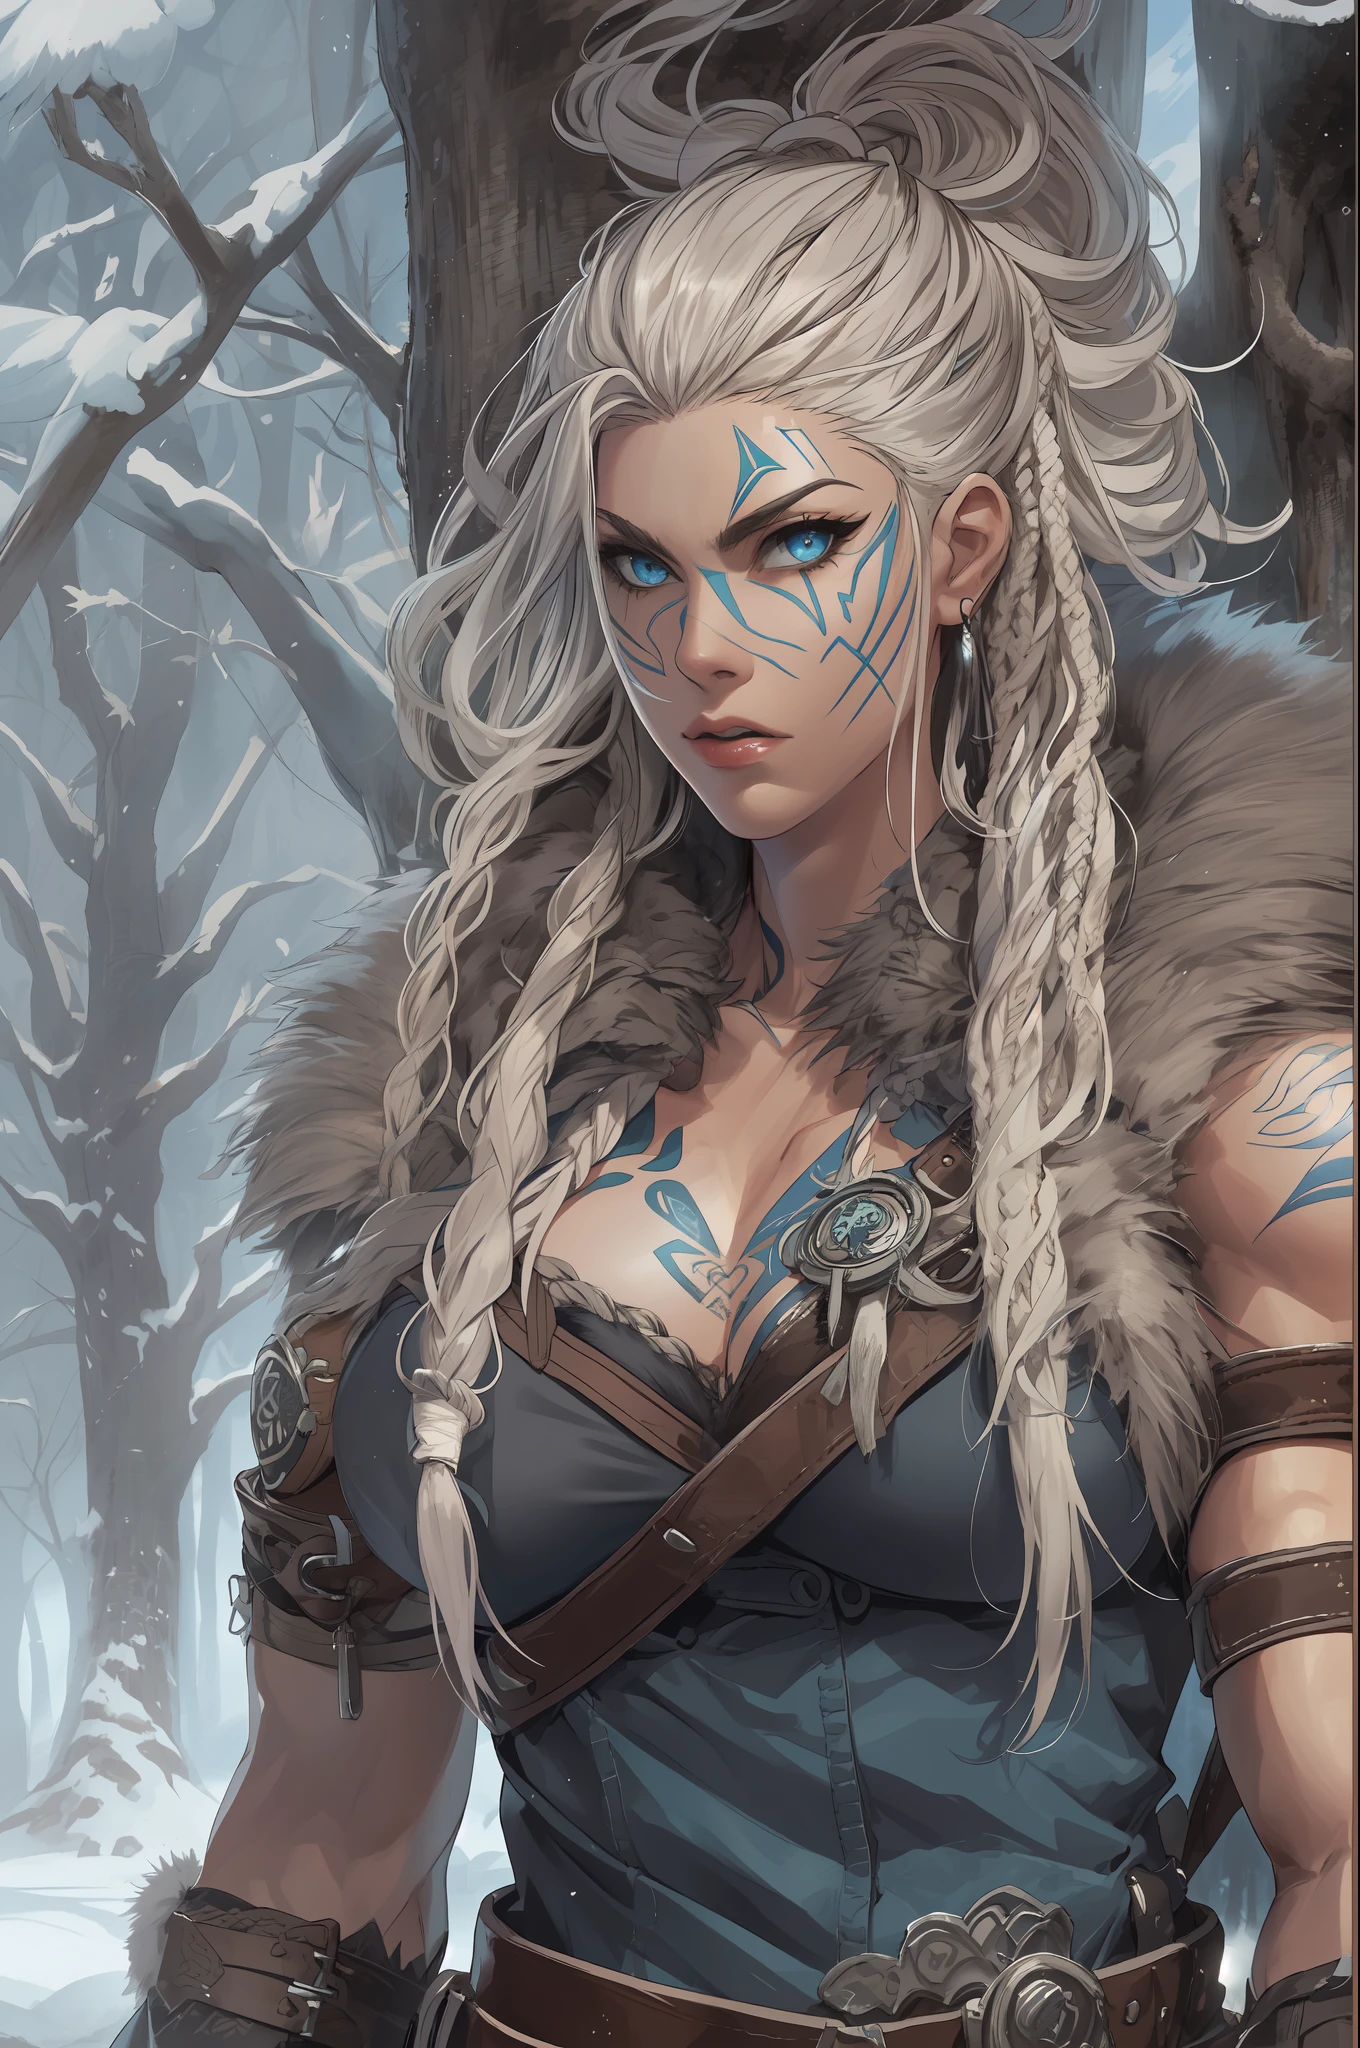 viking feminino, (Jovem:1.2), (muscular:1.2), ajustar, vestindo peles e couros marrons, (vestindo peles:1.3) (blue Nórdico tattoos:1.2), olhos azuis, cabelo loiro platinado, (dreadlocks:1.4), (dreads:1.4), (Barba lateral:1.4), cabelo de guerreiro, O cenário é uma floresta escandinava no inverno, neve, braços nus, naval exposto, (Abdômen:1.2). altamente detalhado, Nórdico, Berserker, músculos do braço, músculos das pernas, (volumoso:1.2), correias de couro, (seios grandes:1.3), cintura para cima, cintura larga, atarracado, (Alto:1.4), Crie uma imagem usando um efeito de prisma, com refração da luz e criação de um colorido, aparência caleidoscópica. QUEBRAR , Projete uma imagem com efeito de lente olho de peixe, capturando um amplo campo de visão com um distinto, perspectiva curva. QUEBRAR , Capture um caminho na floresta, com árvores imponentes, luz solar manchada, e uma sensação de tranquilidade e beleza natural. QUEBRAR , Ilustre um mundo monocromático, usando apenas tons de preto, branco, e cinza para transmitir profundidade, emoção, e um impacto visual impressionante.